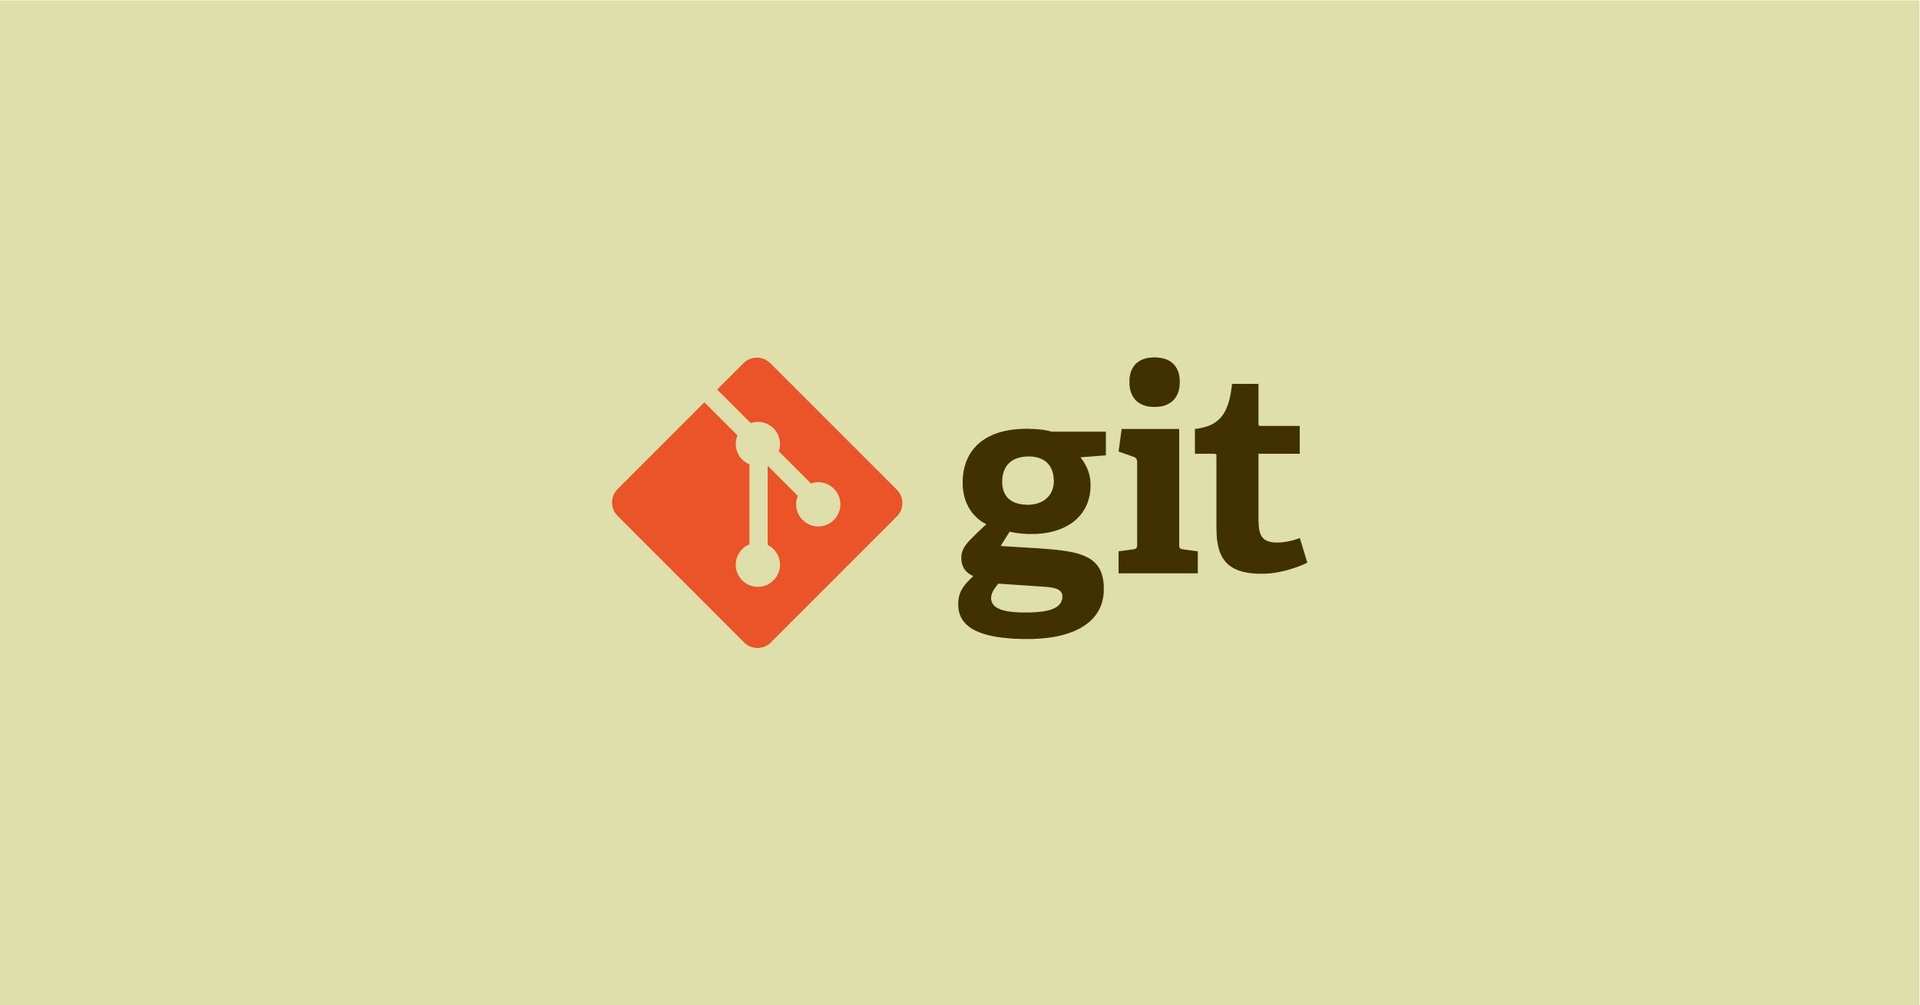 شرح أساسيات استخدام Git المعروف بنظام إدارة النسخ (1-2)